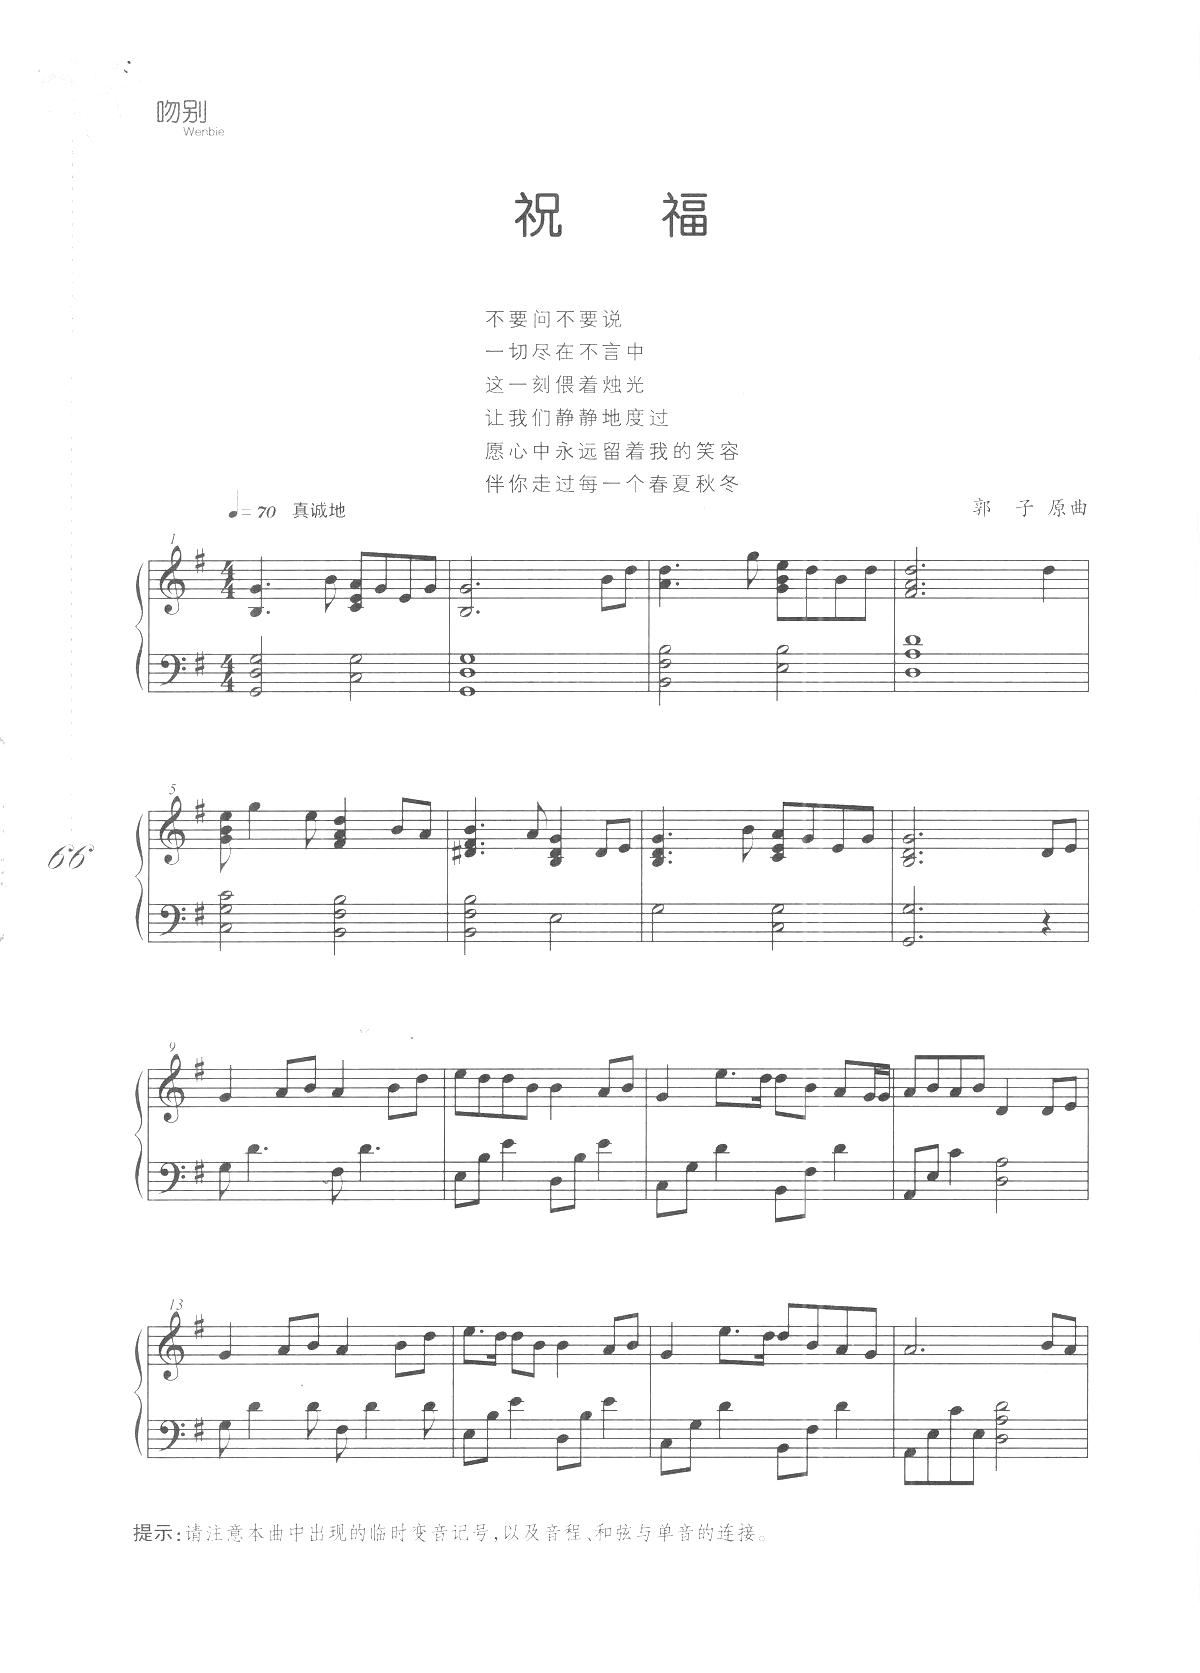 祝福 吻别 张学友歌曲改编的钢琴曲(钢琴谱)1